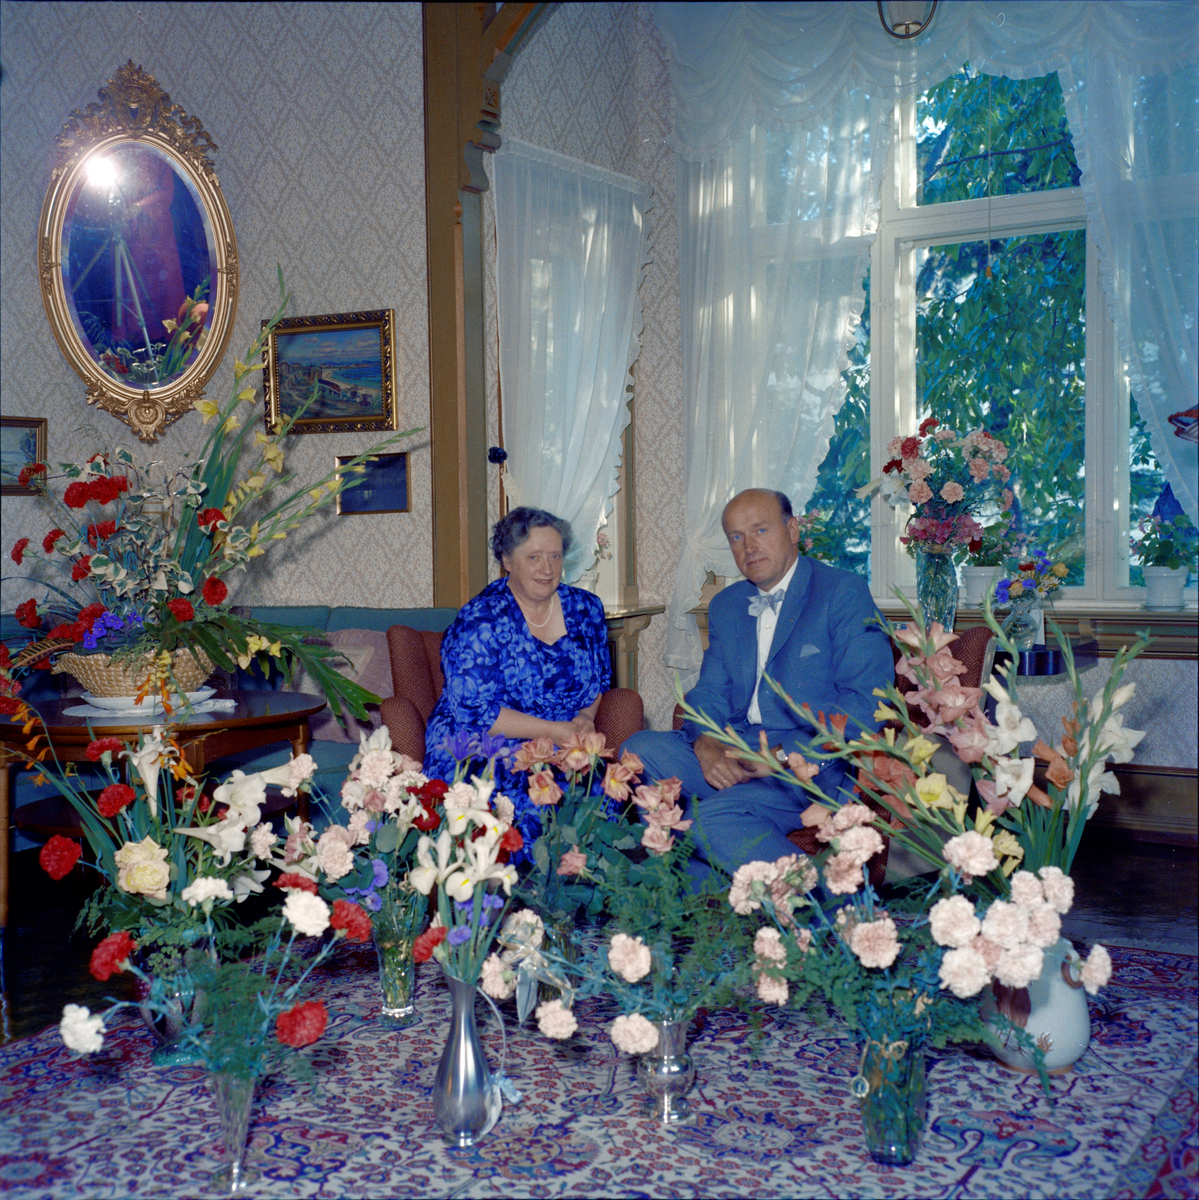 Eilif og Lilly Schrøder omgitt av blomster i anledning deres sølvbryllup. Fotografen, Rakel Schrøder, vises delvis i speilet.